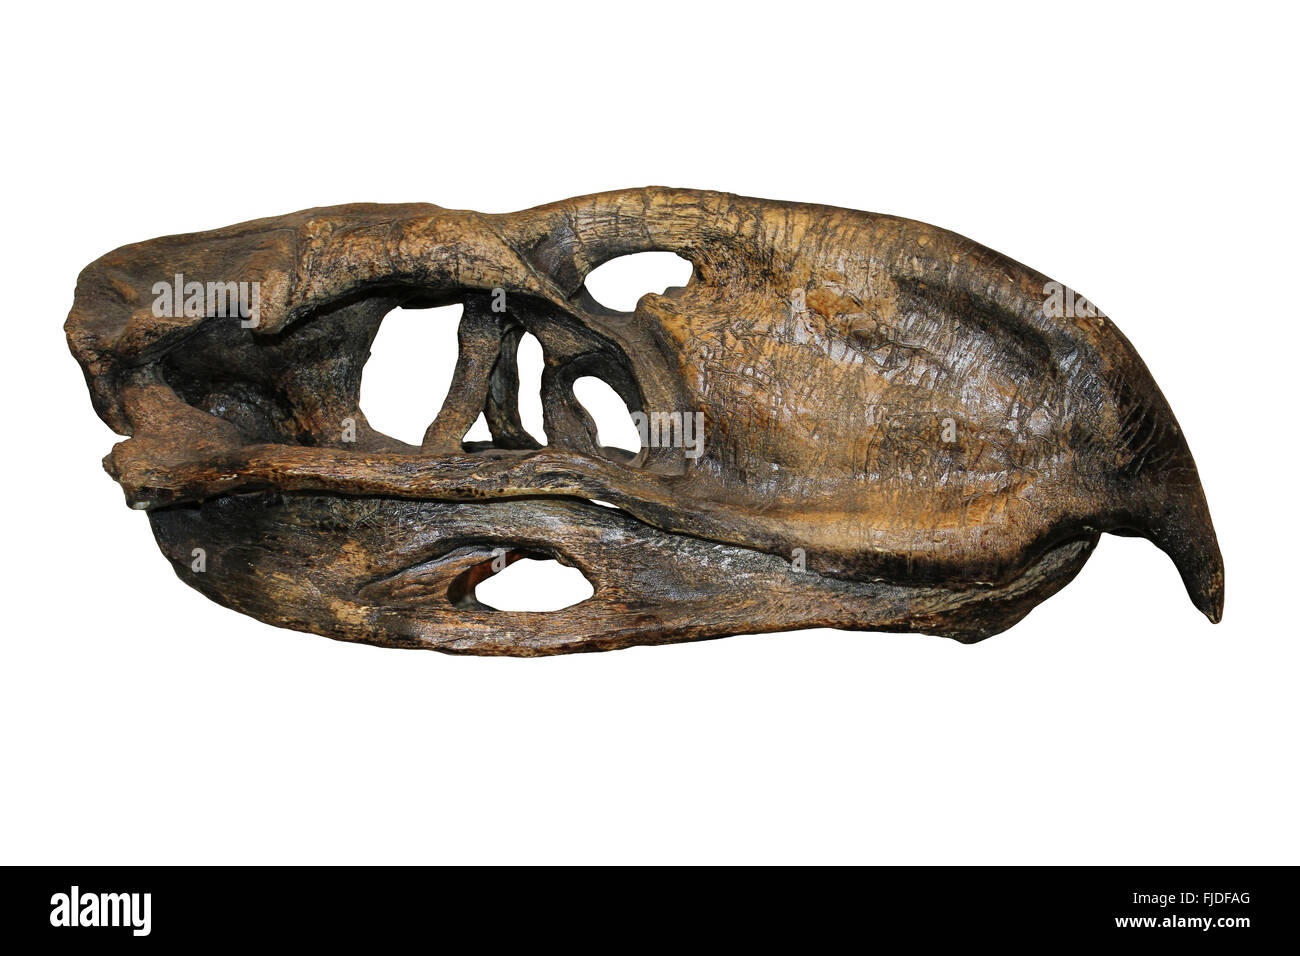 La terreur Bird Skull Phorusrhacos longissimus Amérique du Sud a propos de l'enseignement supérieur 45-25 millions d'années Banque D'Images